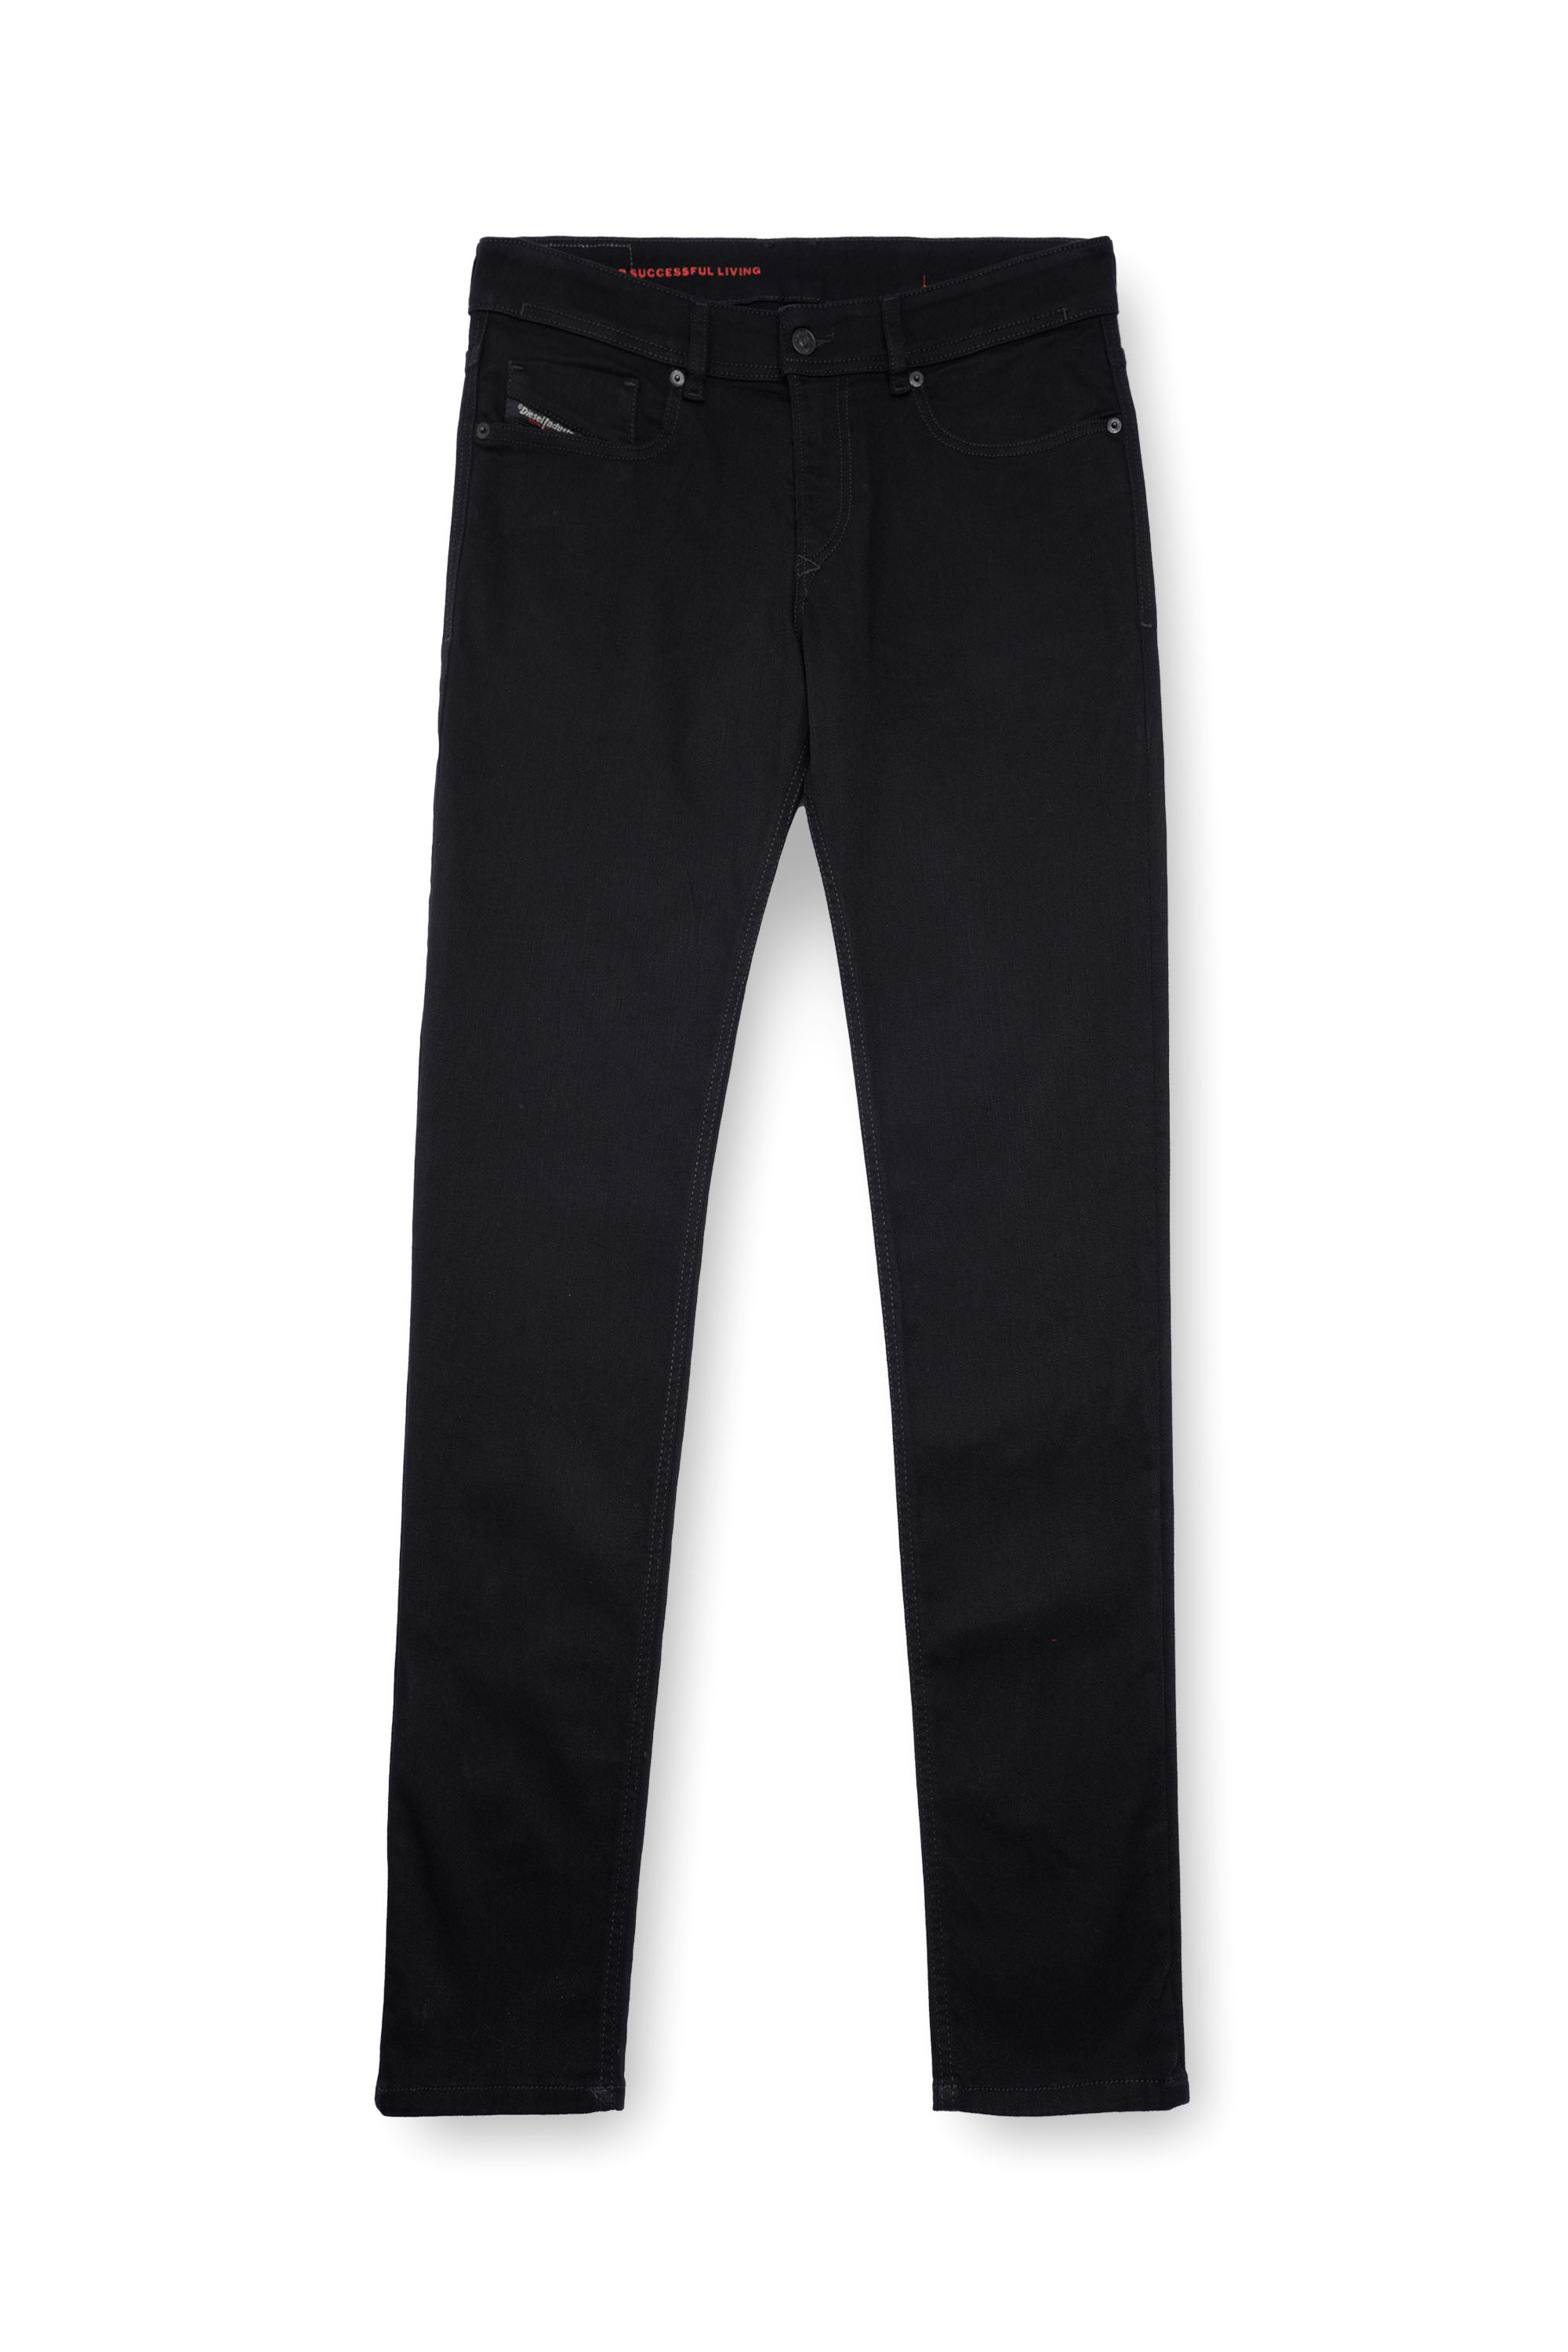 Diesel - Man Skinny Jeans 1979 Sleenker 09C51, Black/Dark grey - Image 5